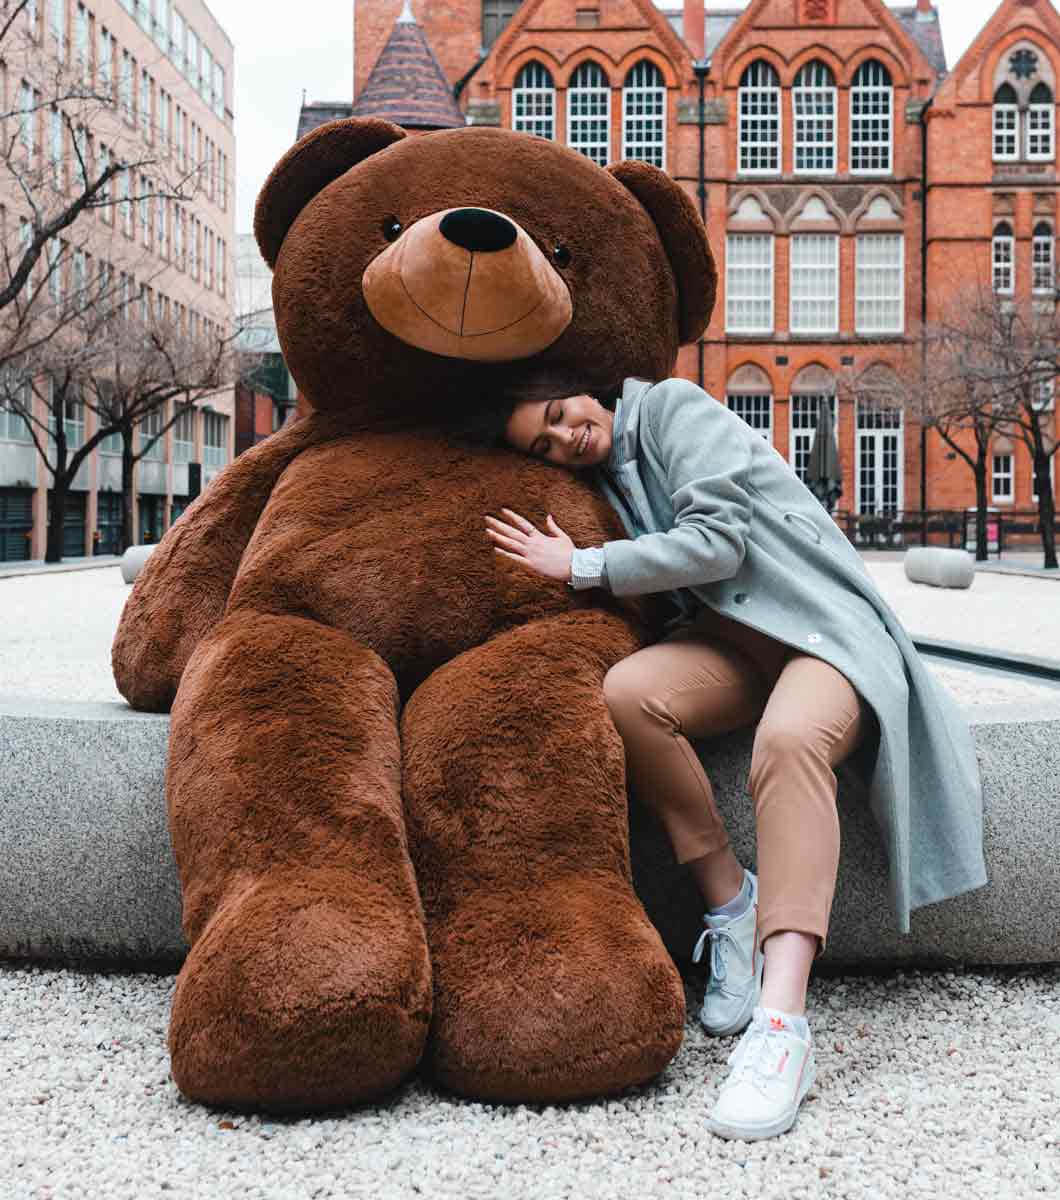 Einbild Von Einem Glücklichen Teddybär, Der Auf Einem Bett Sitzt.